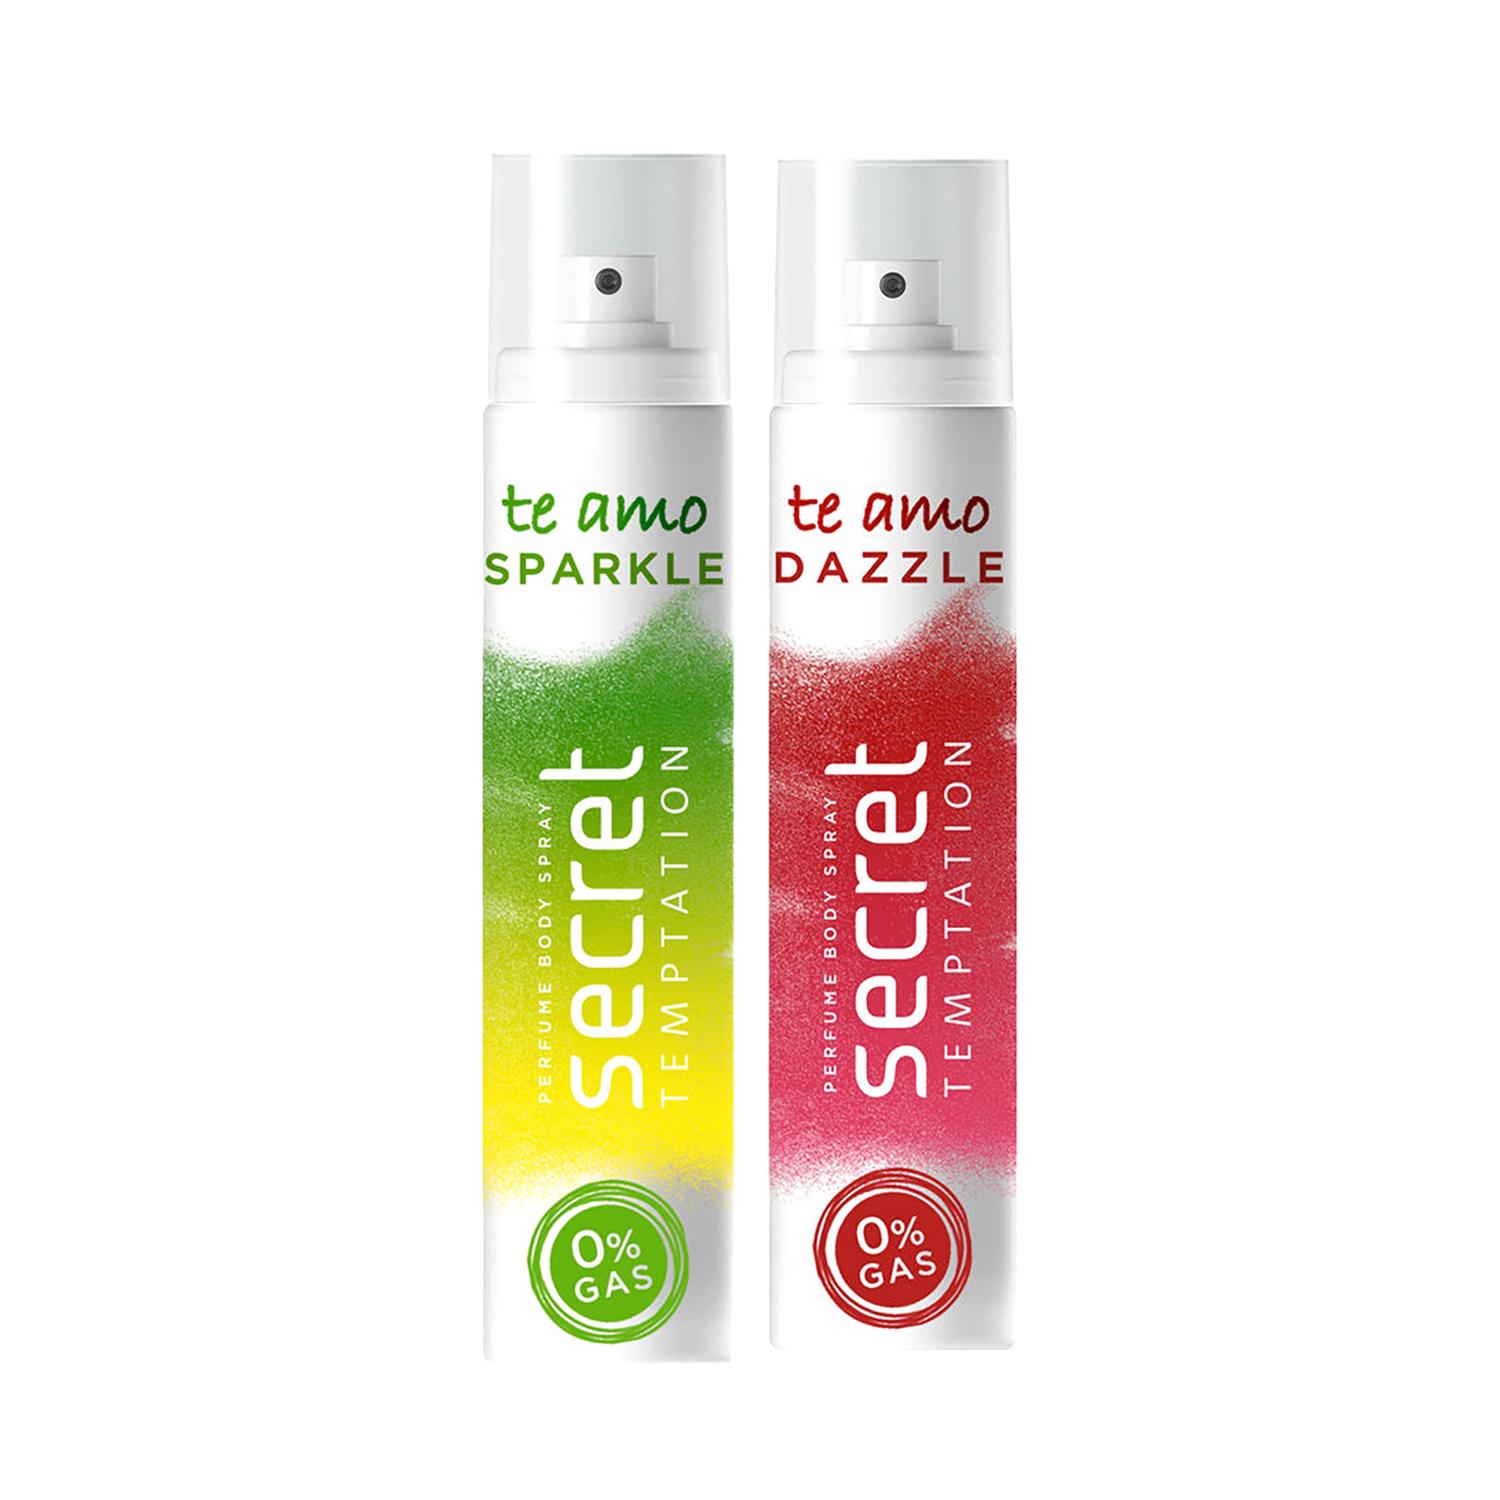 Secret Temptation | Secret Temptation Te Amo Sparkle Nogas (120ml) & Dazzle Nogas (120ml) Body Spray For Women Combo